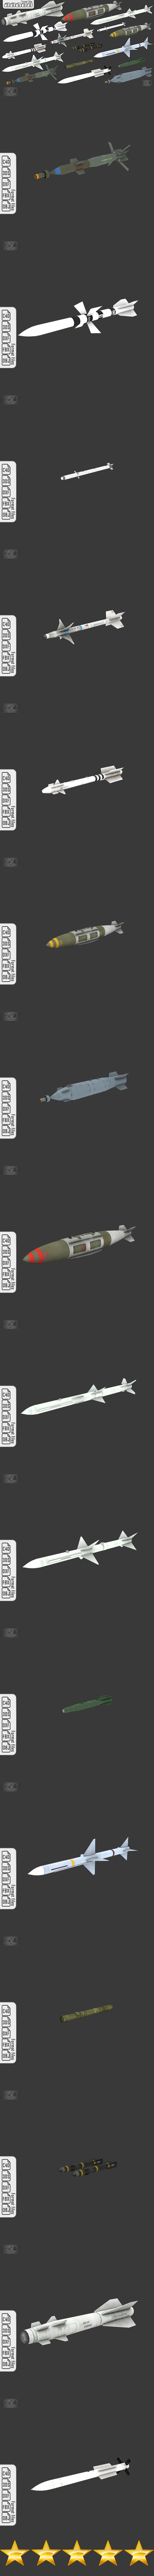 16 Missiles - 3Docean 23114331